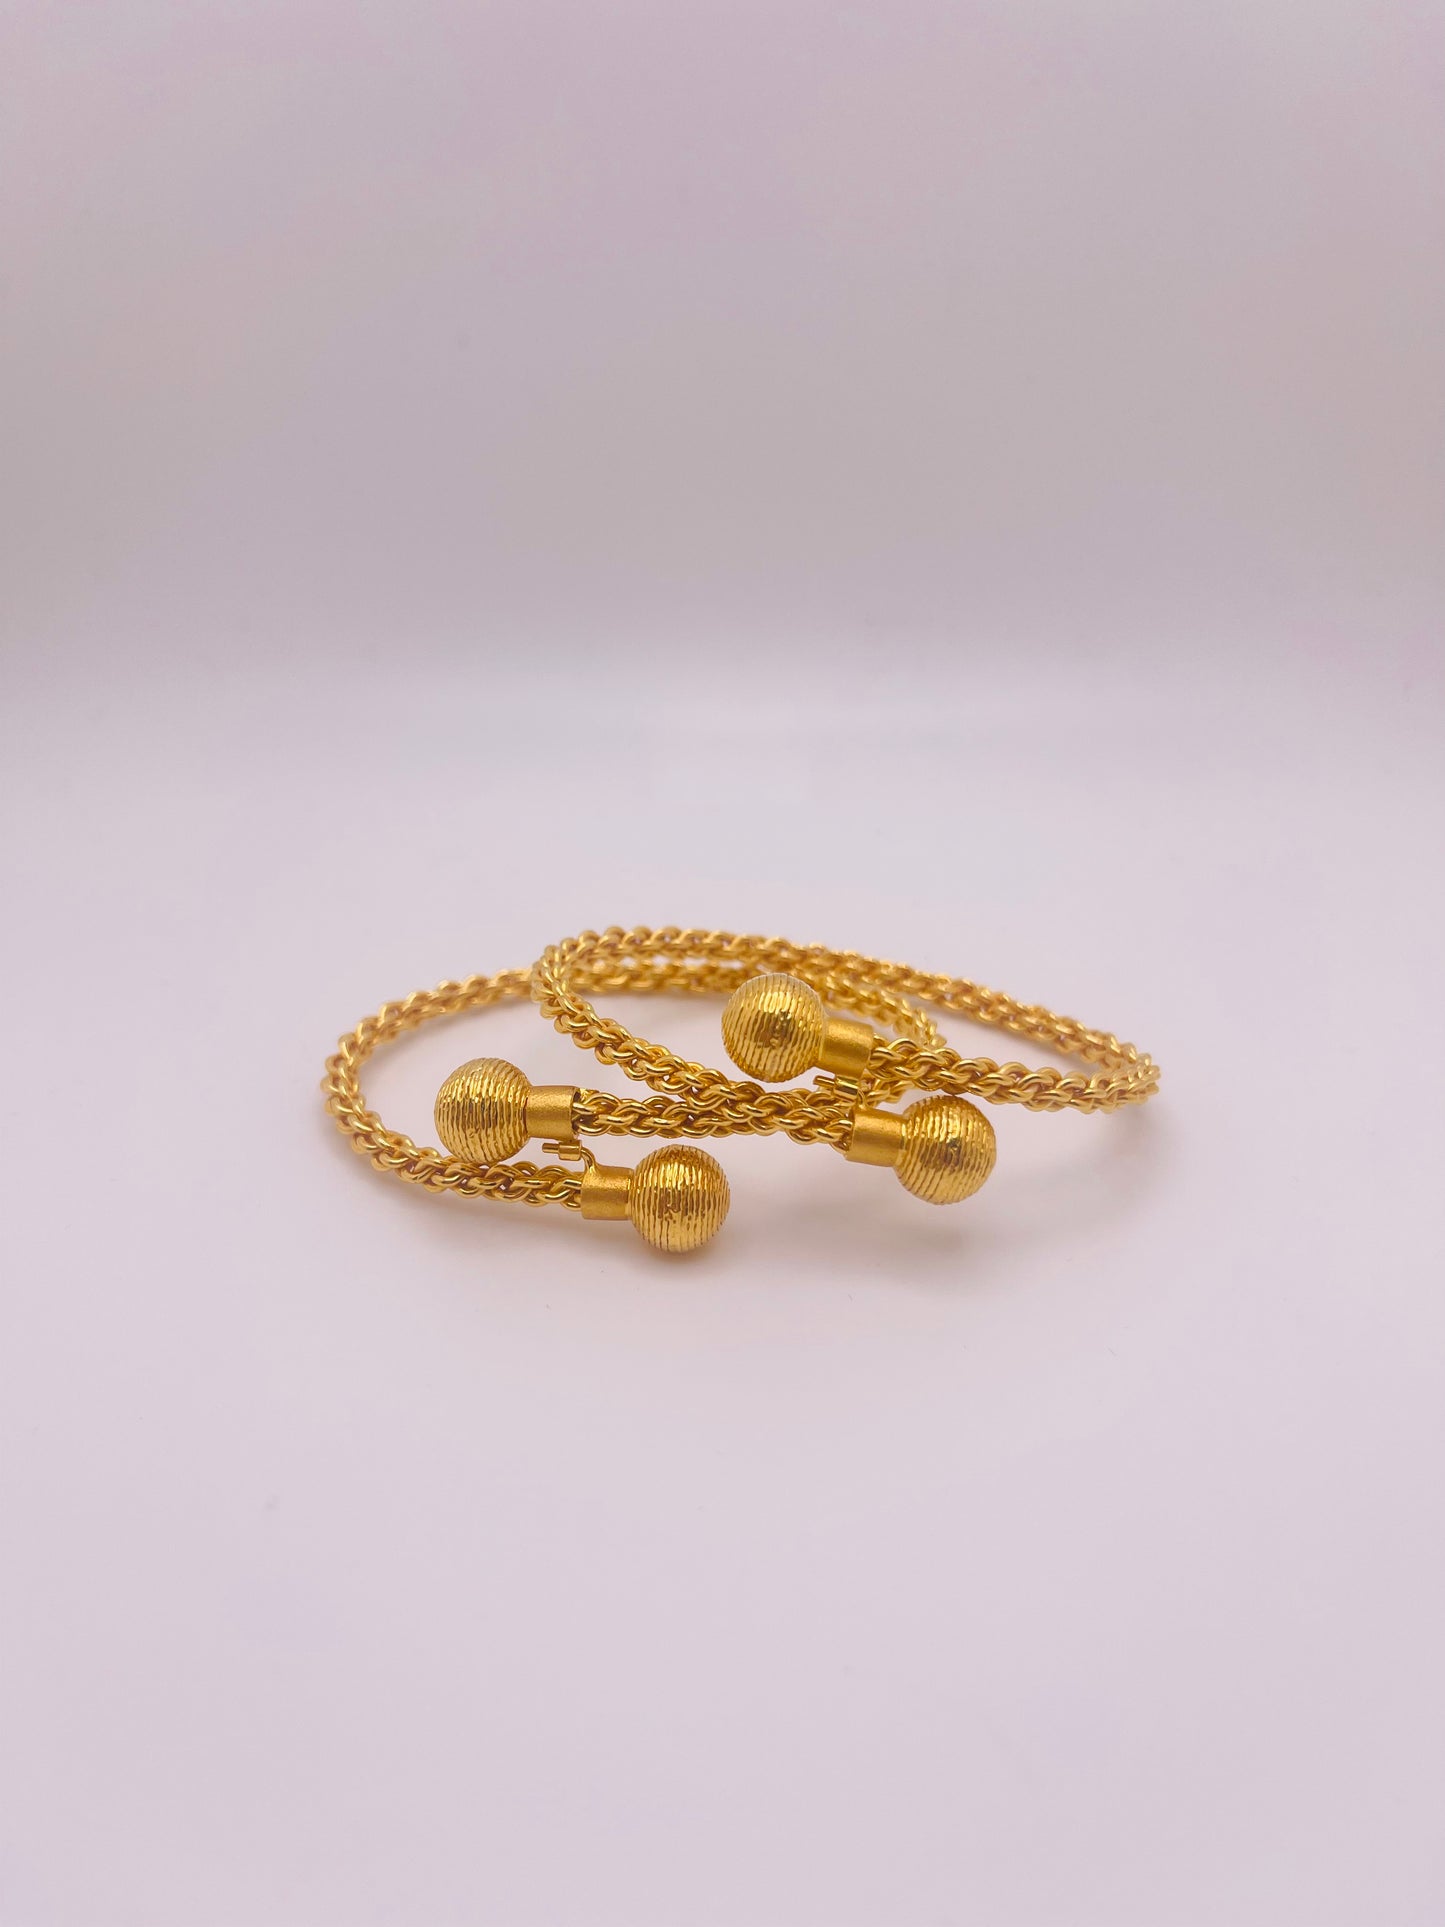 21k Gold Himo Bracelets